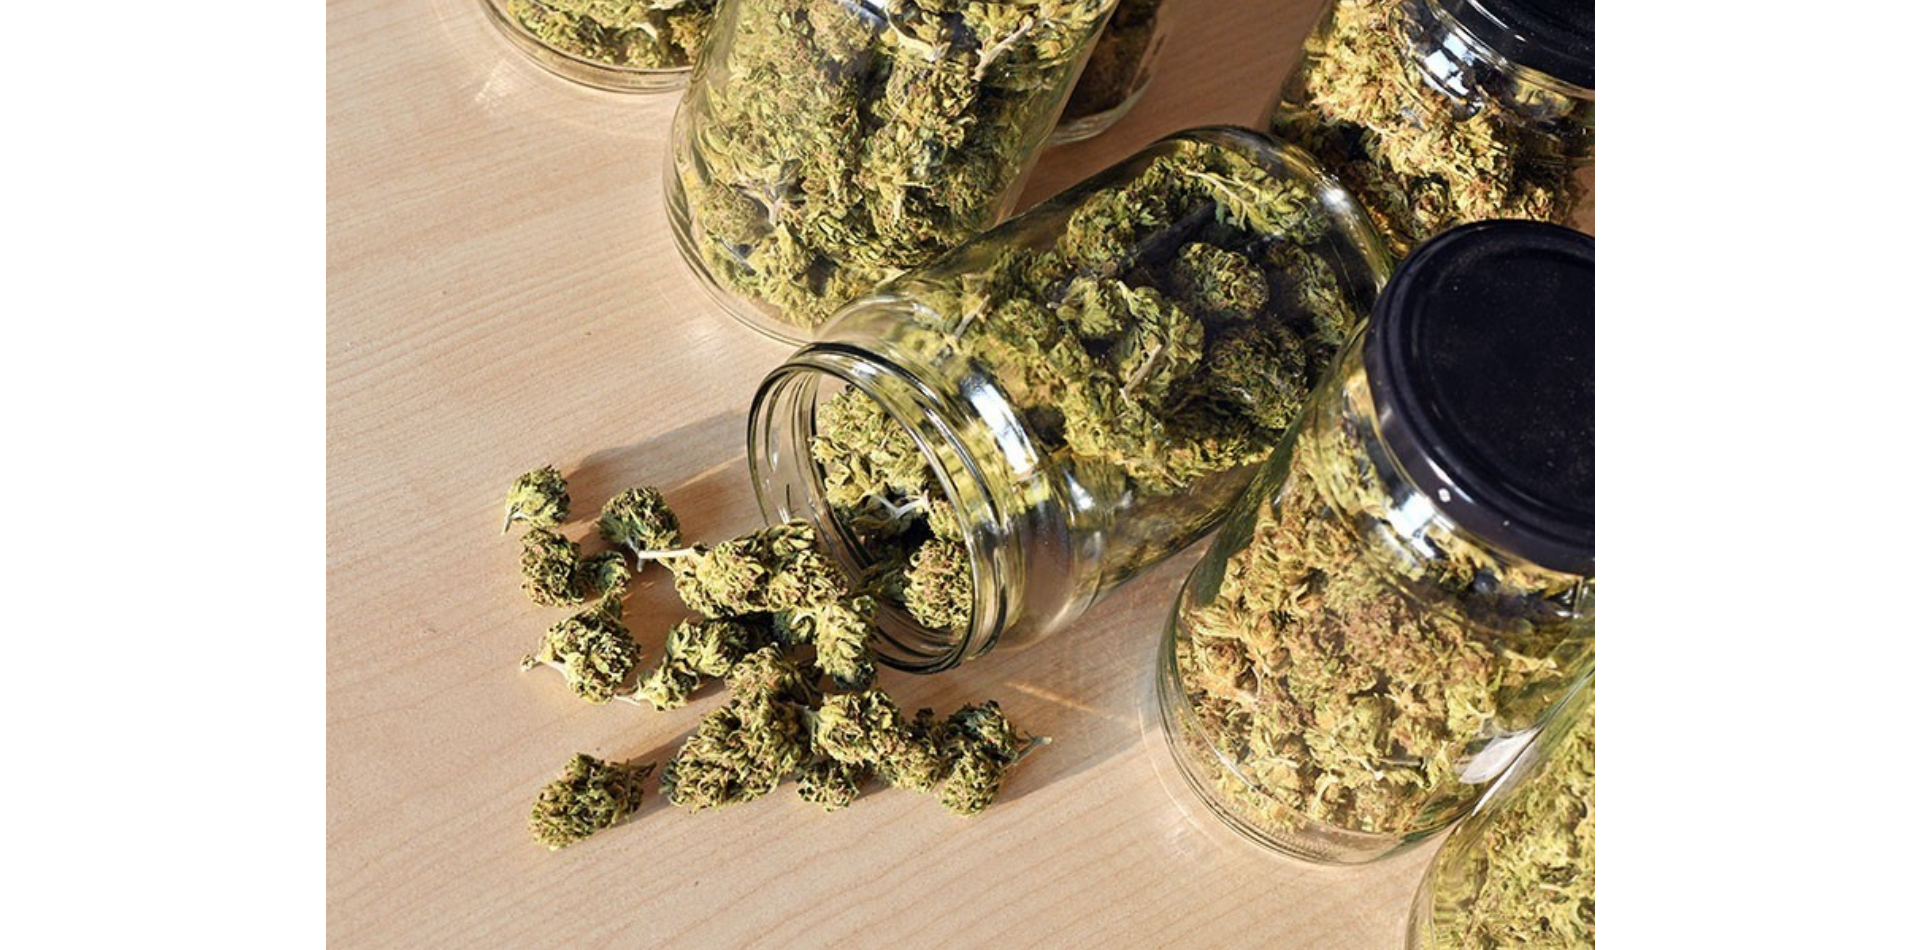 Die Öffnung des Potts: Die Cannabisindustrie in Las Vegas bewegt sich inmitten der COVID vorwärts